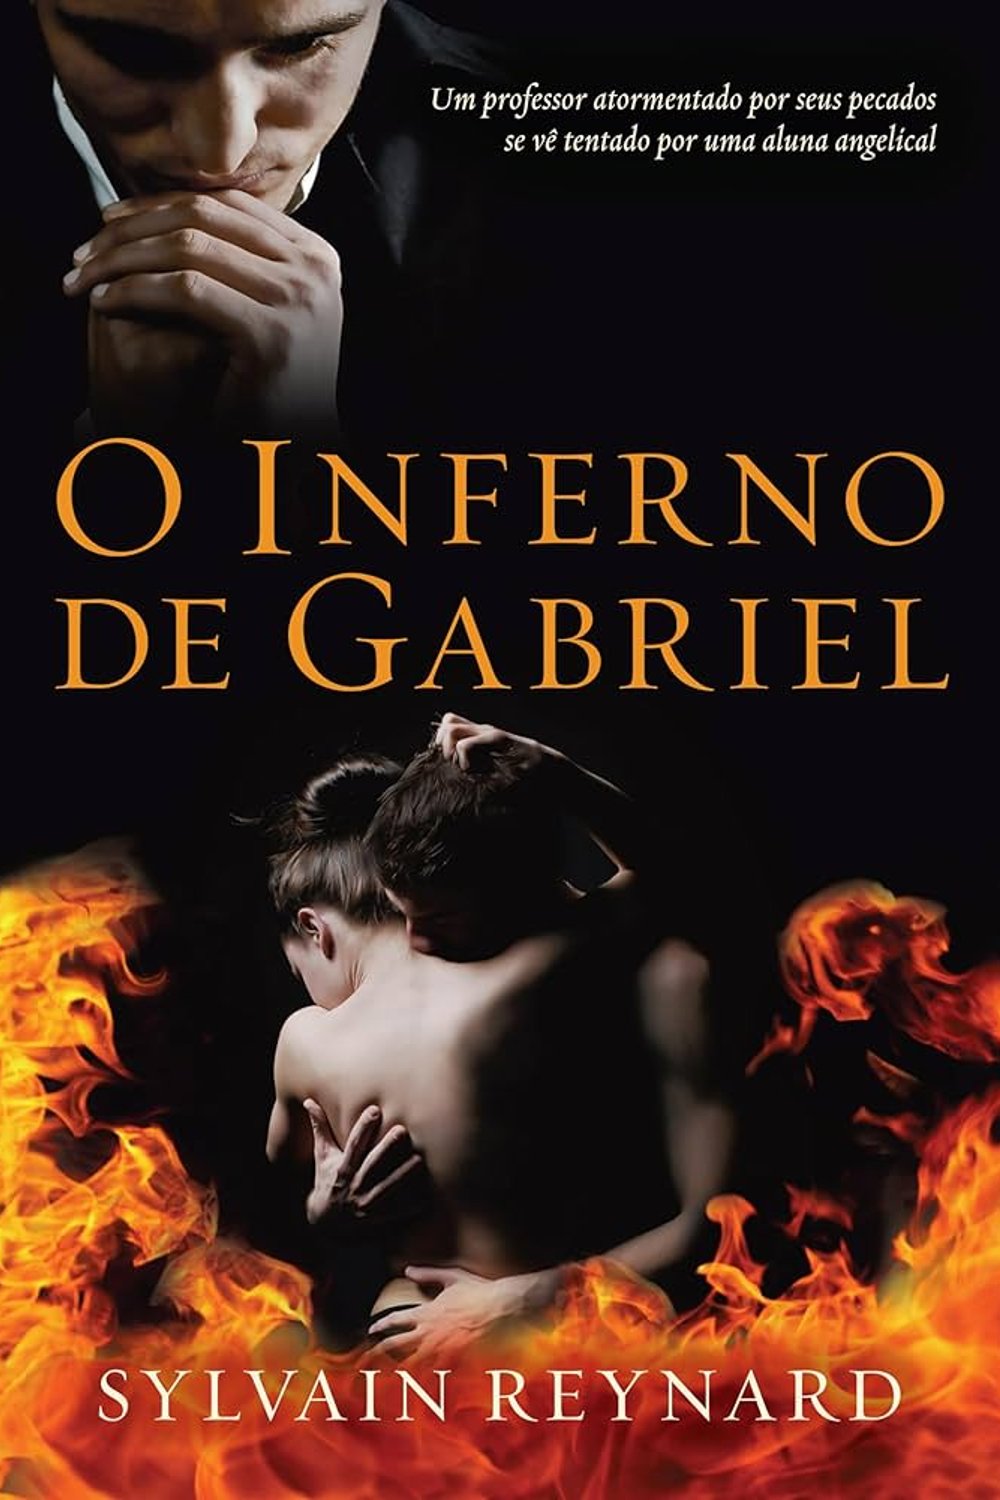 O Inferno de Gabriel - livros de romance - livros - dicas - estante - https://stealthelook.com.br